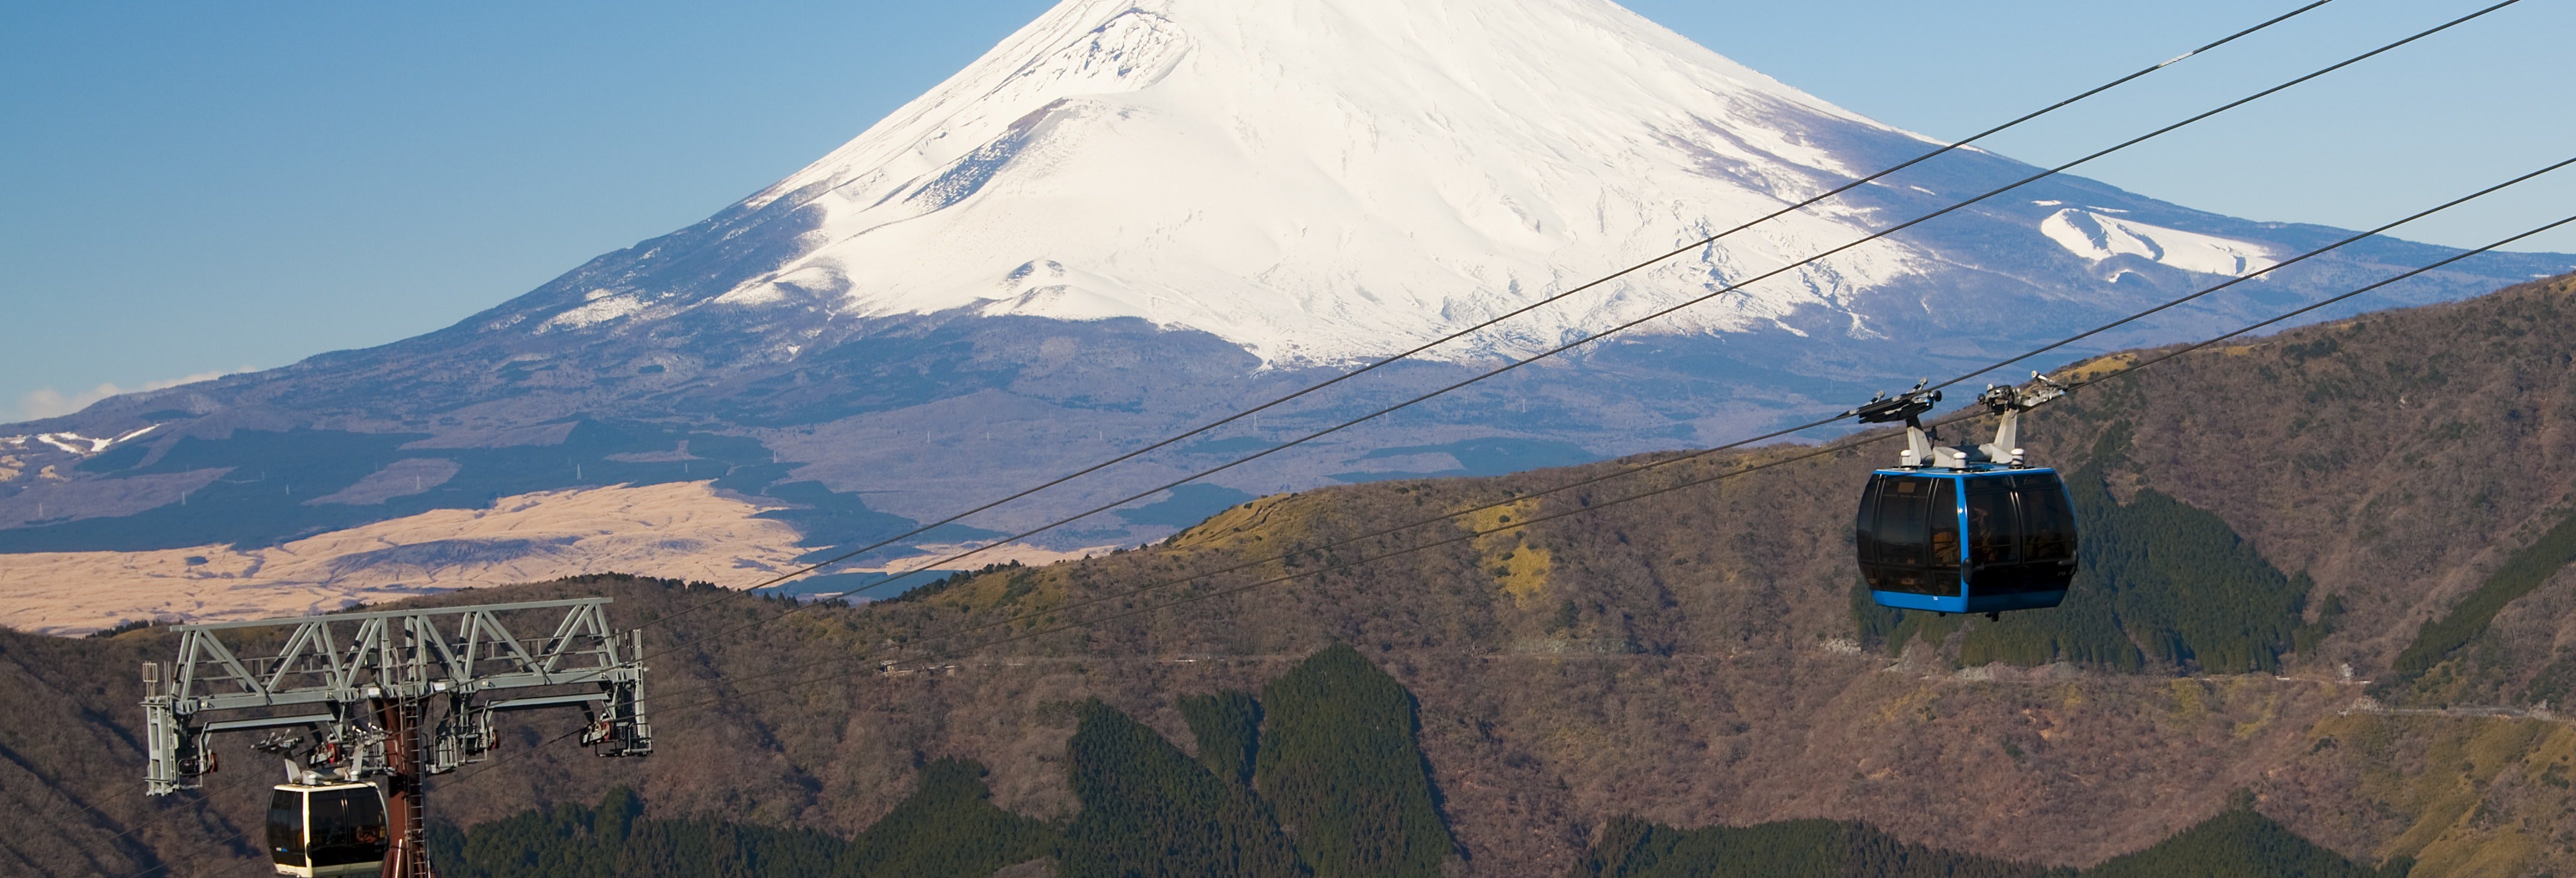 Excursión a Hakone y mirador del monte Fuji